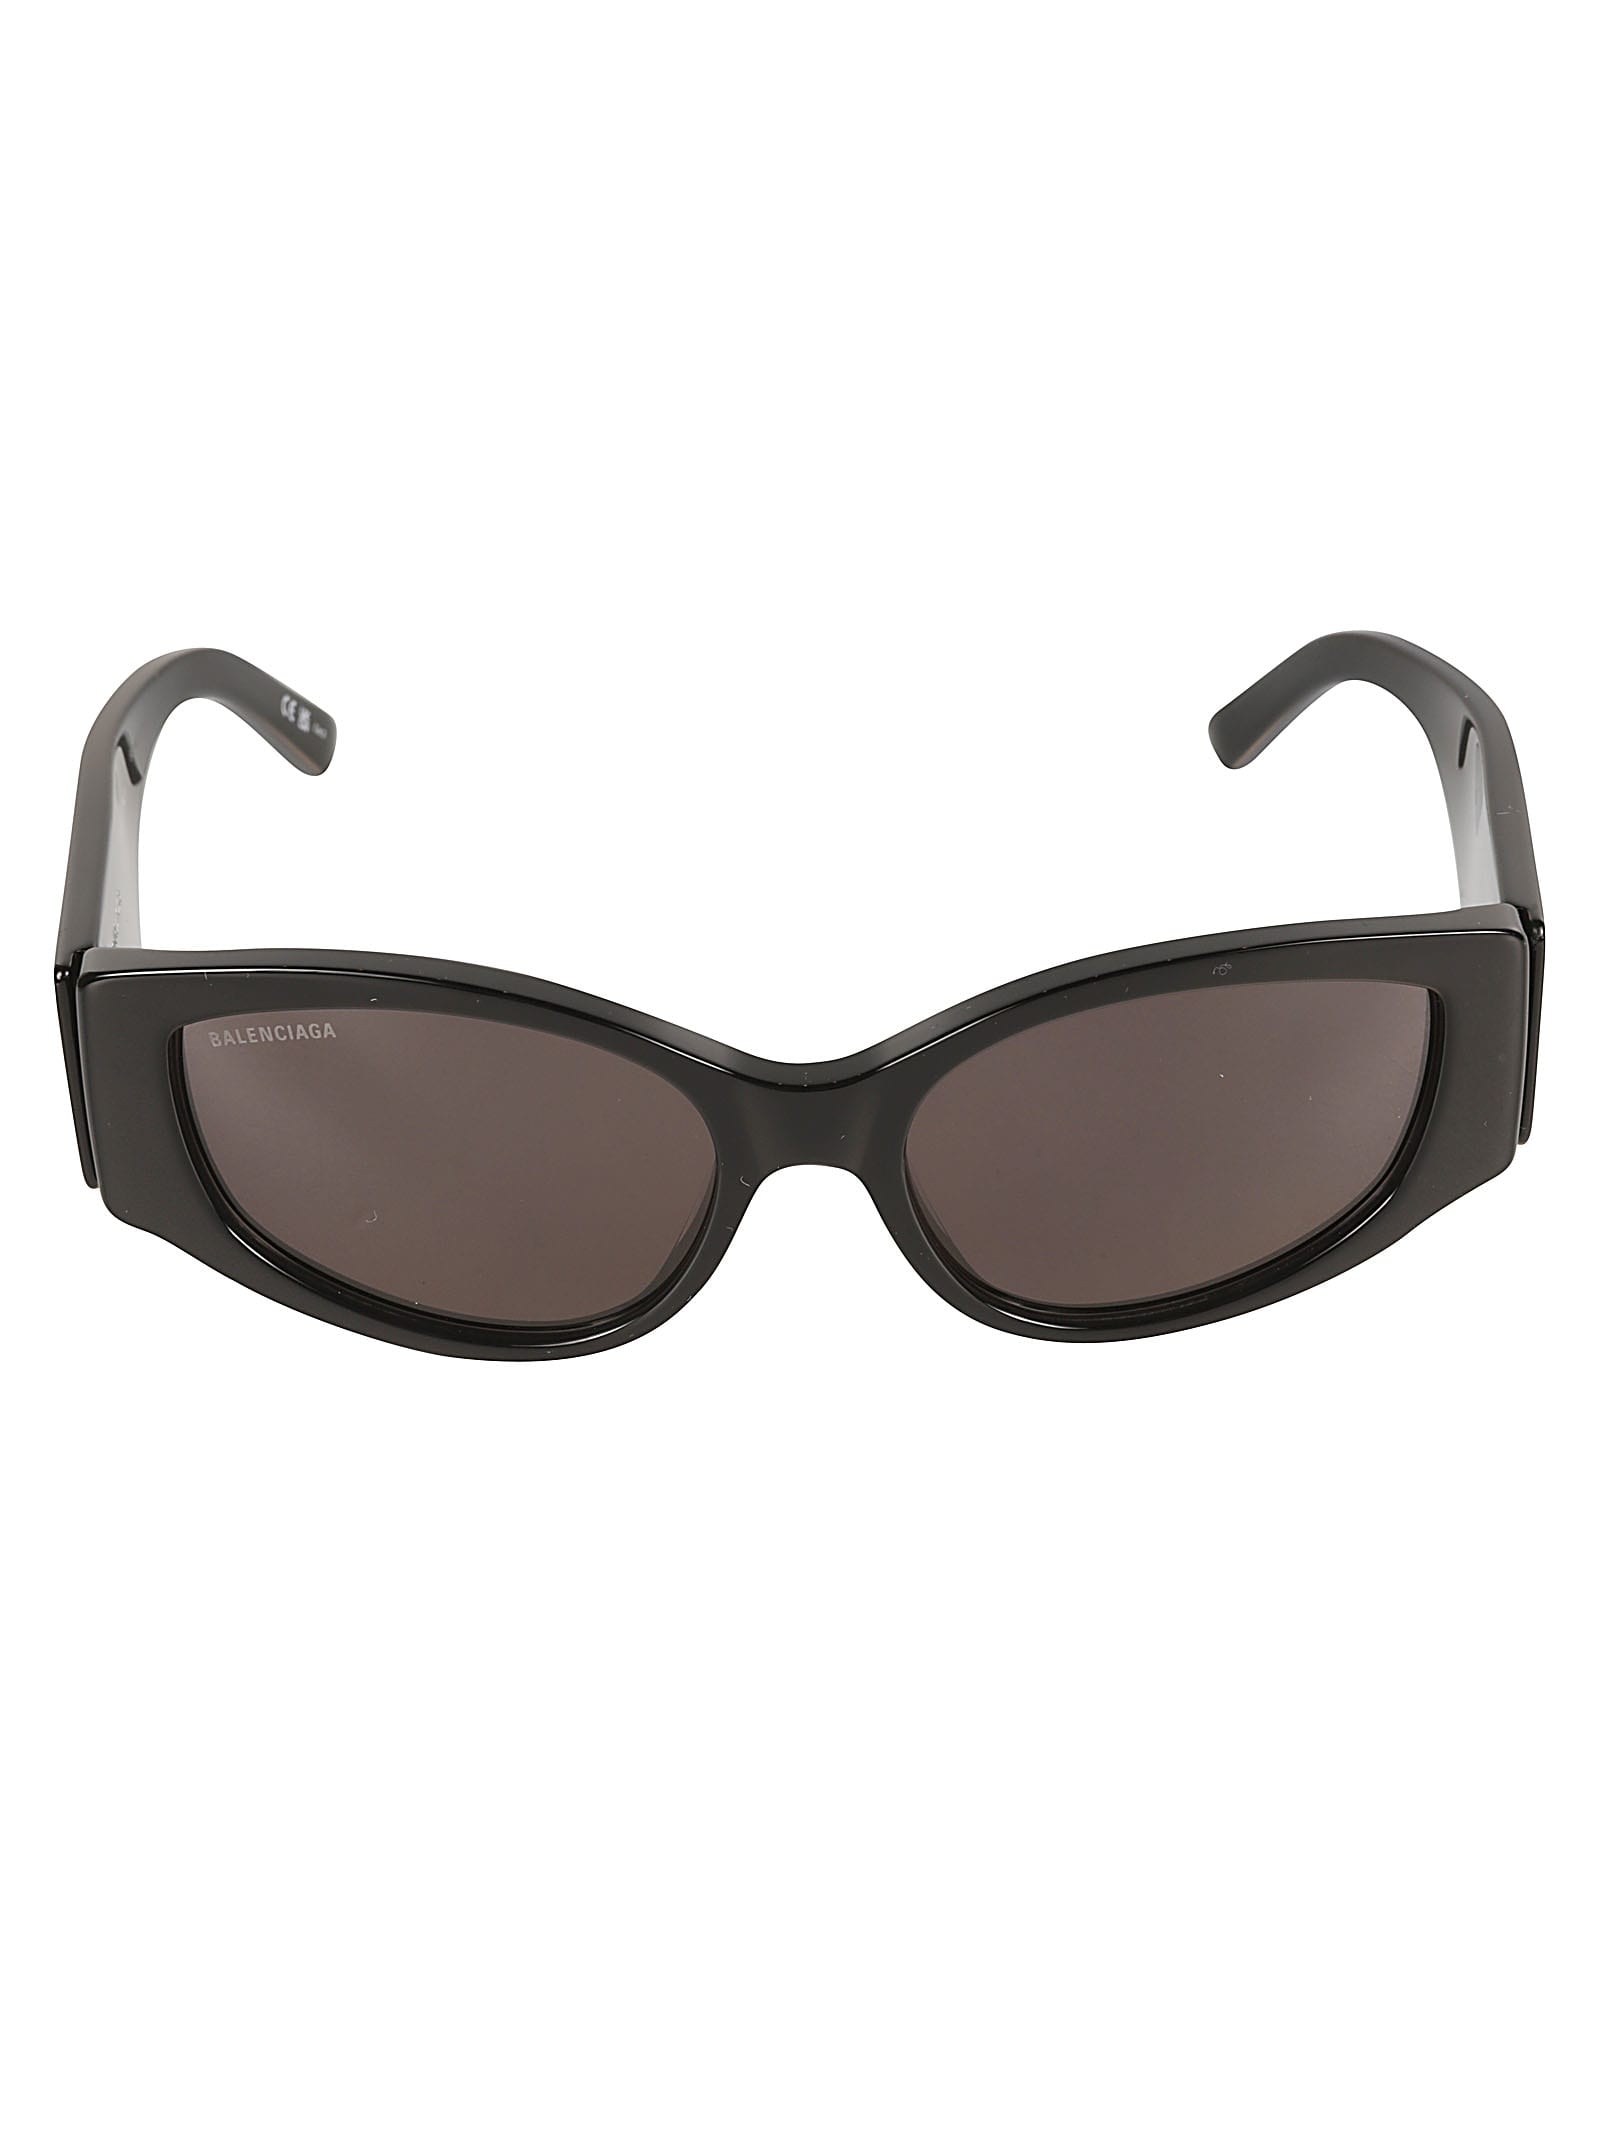 Balenciaga Logo Sided Sunglasses In Black/grey